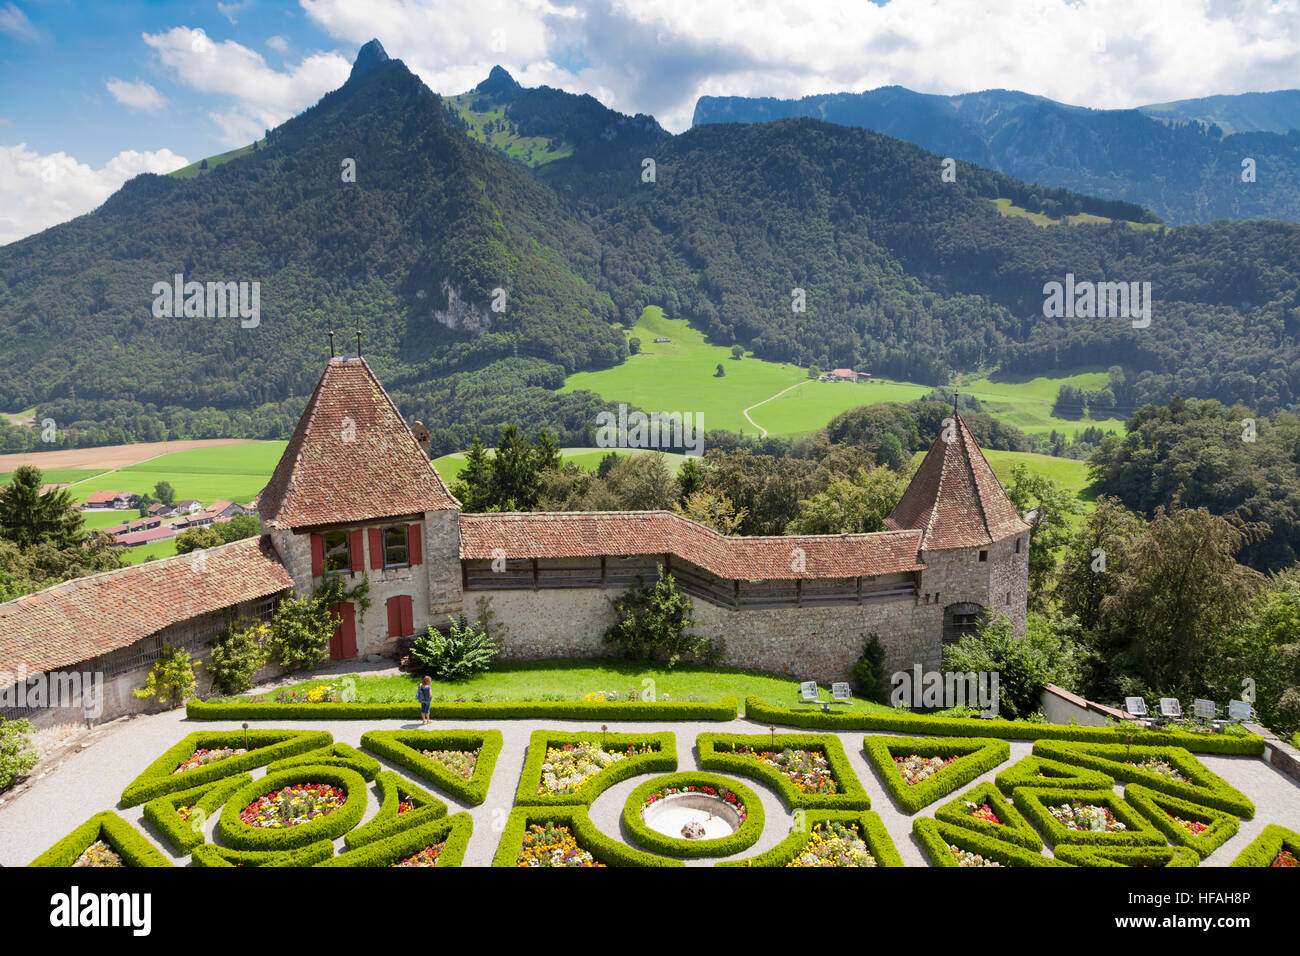 Ein Garten in Gruyère Schloss in sonnigen Sommertag, Schweiz  Stockfotografie - Alamy